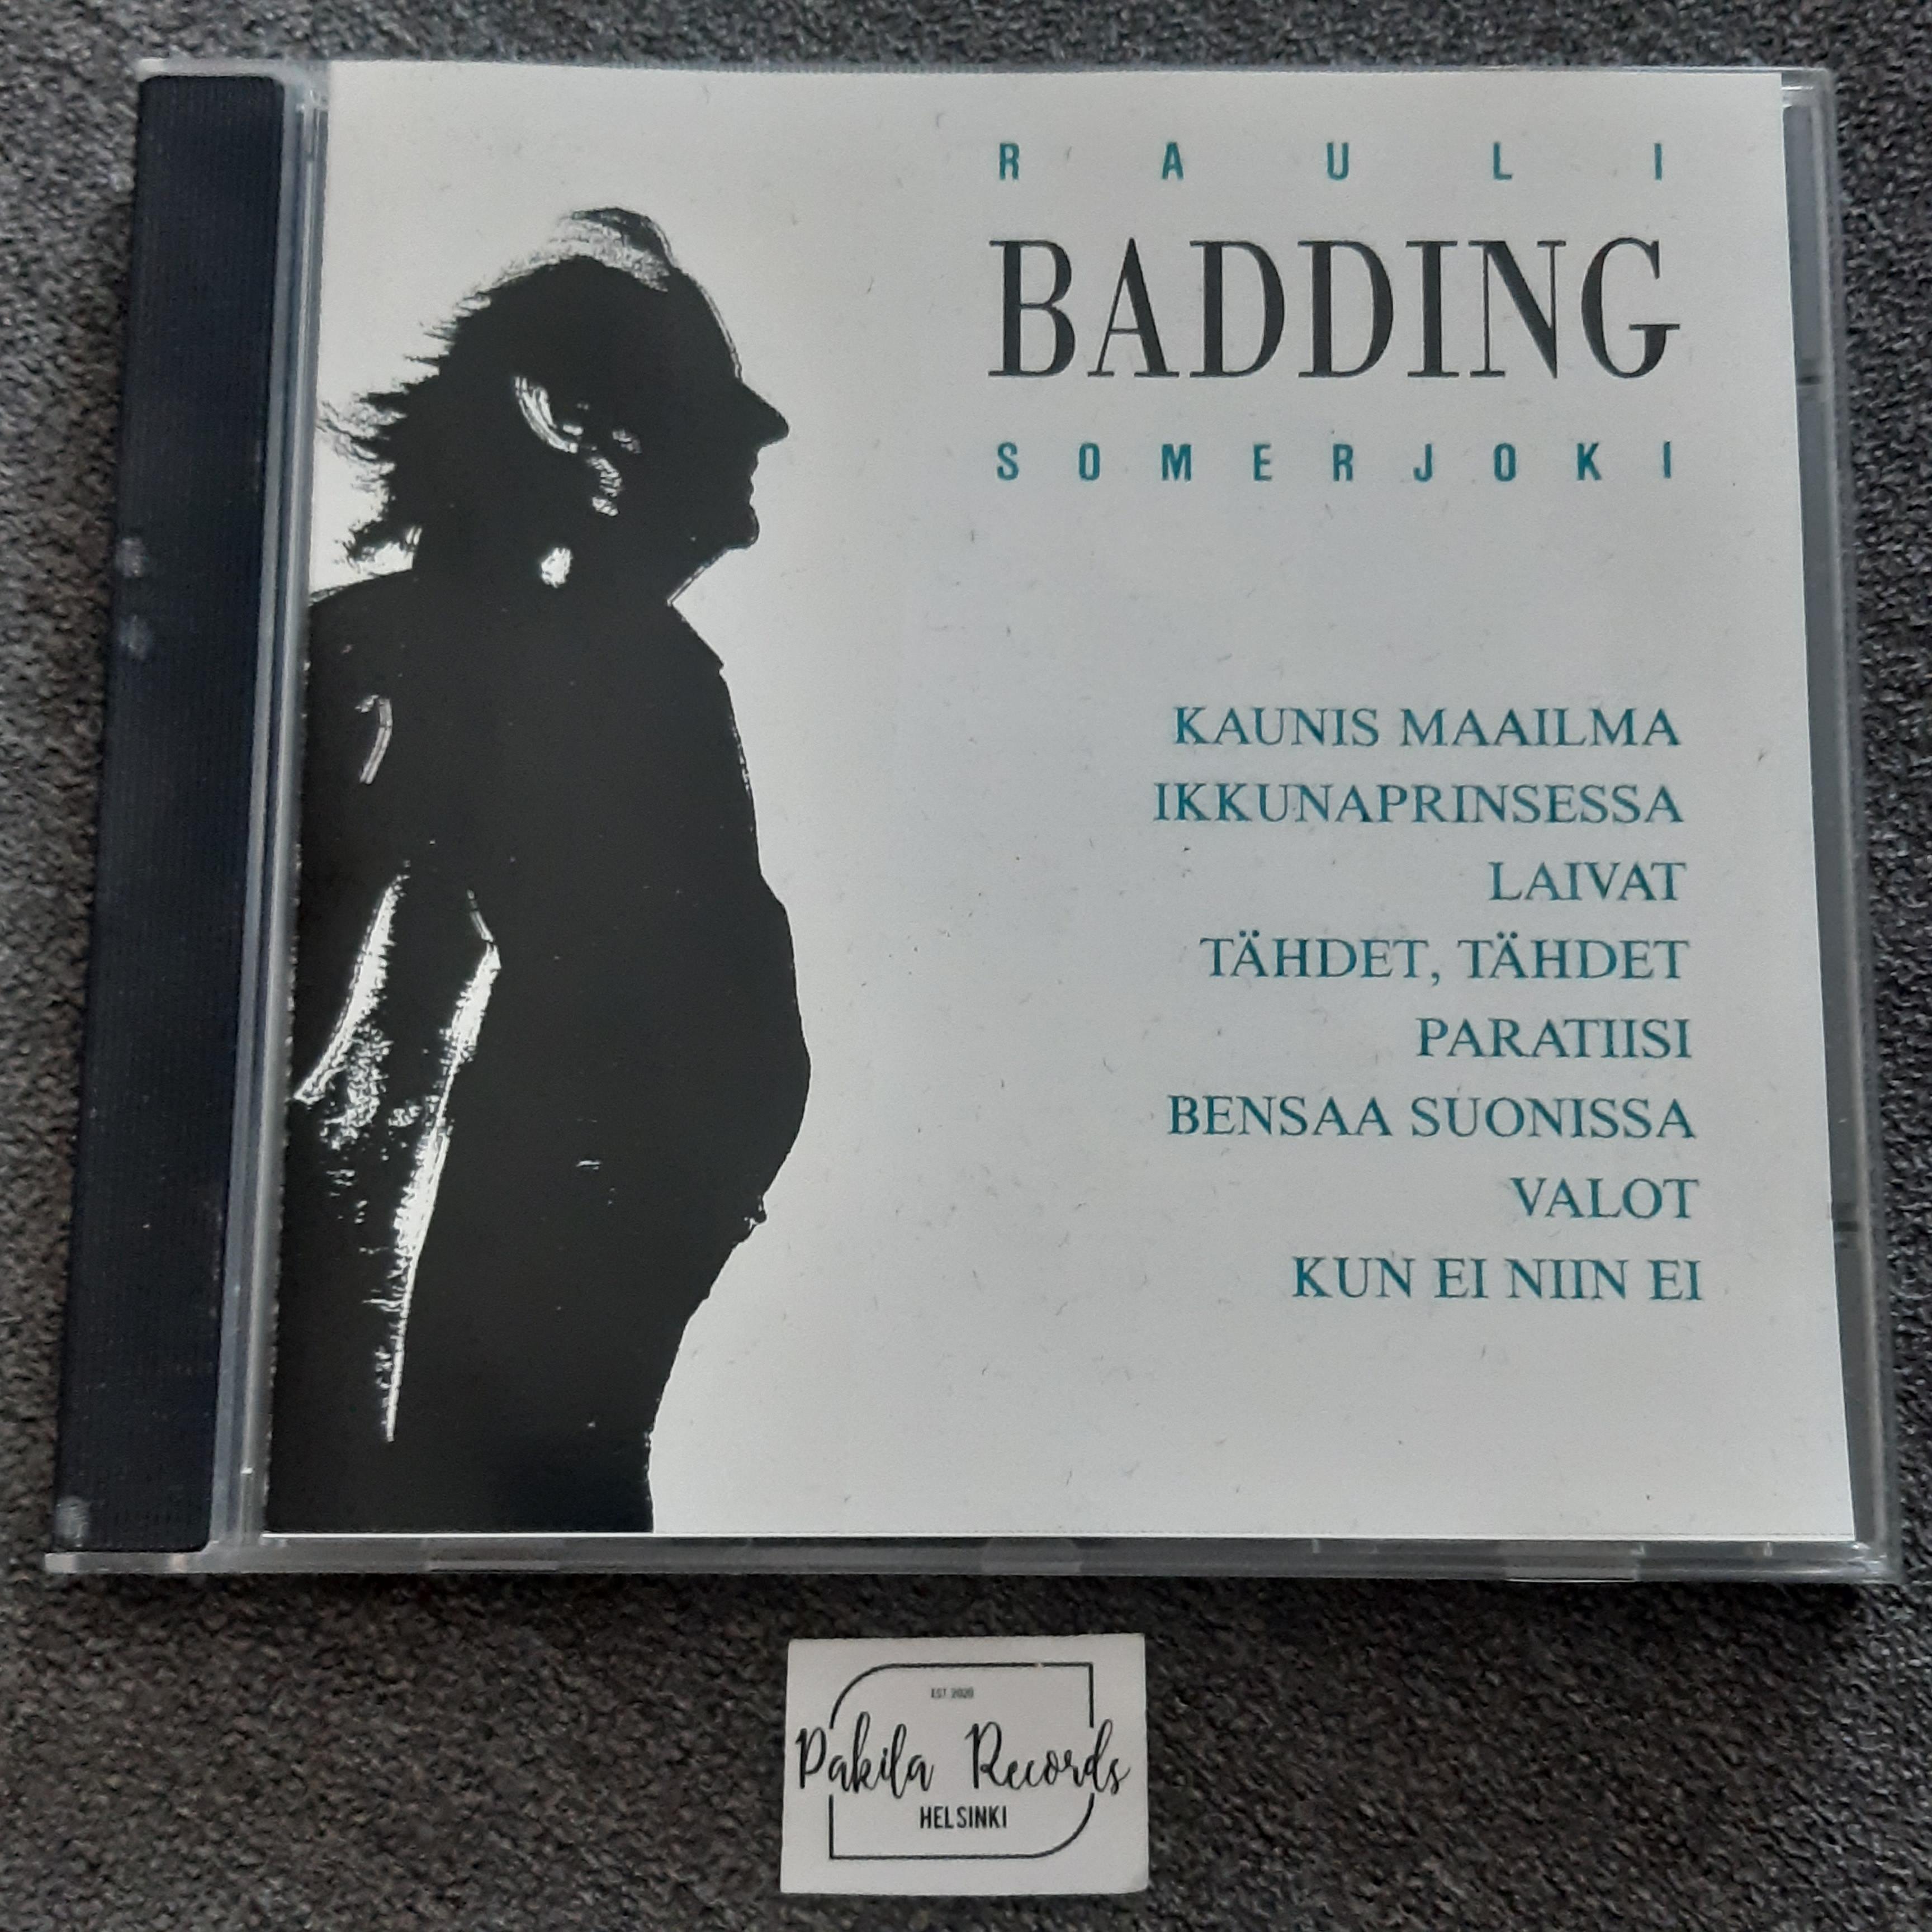 Rauli Badding Somerjoki - Rauli Badding Somerjoki - CD (käytetty)